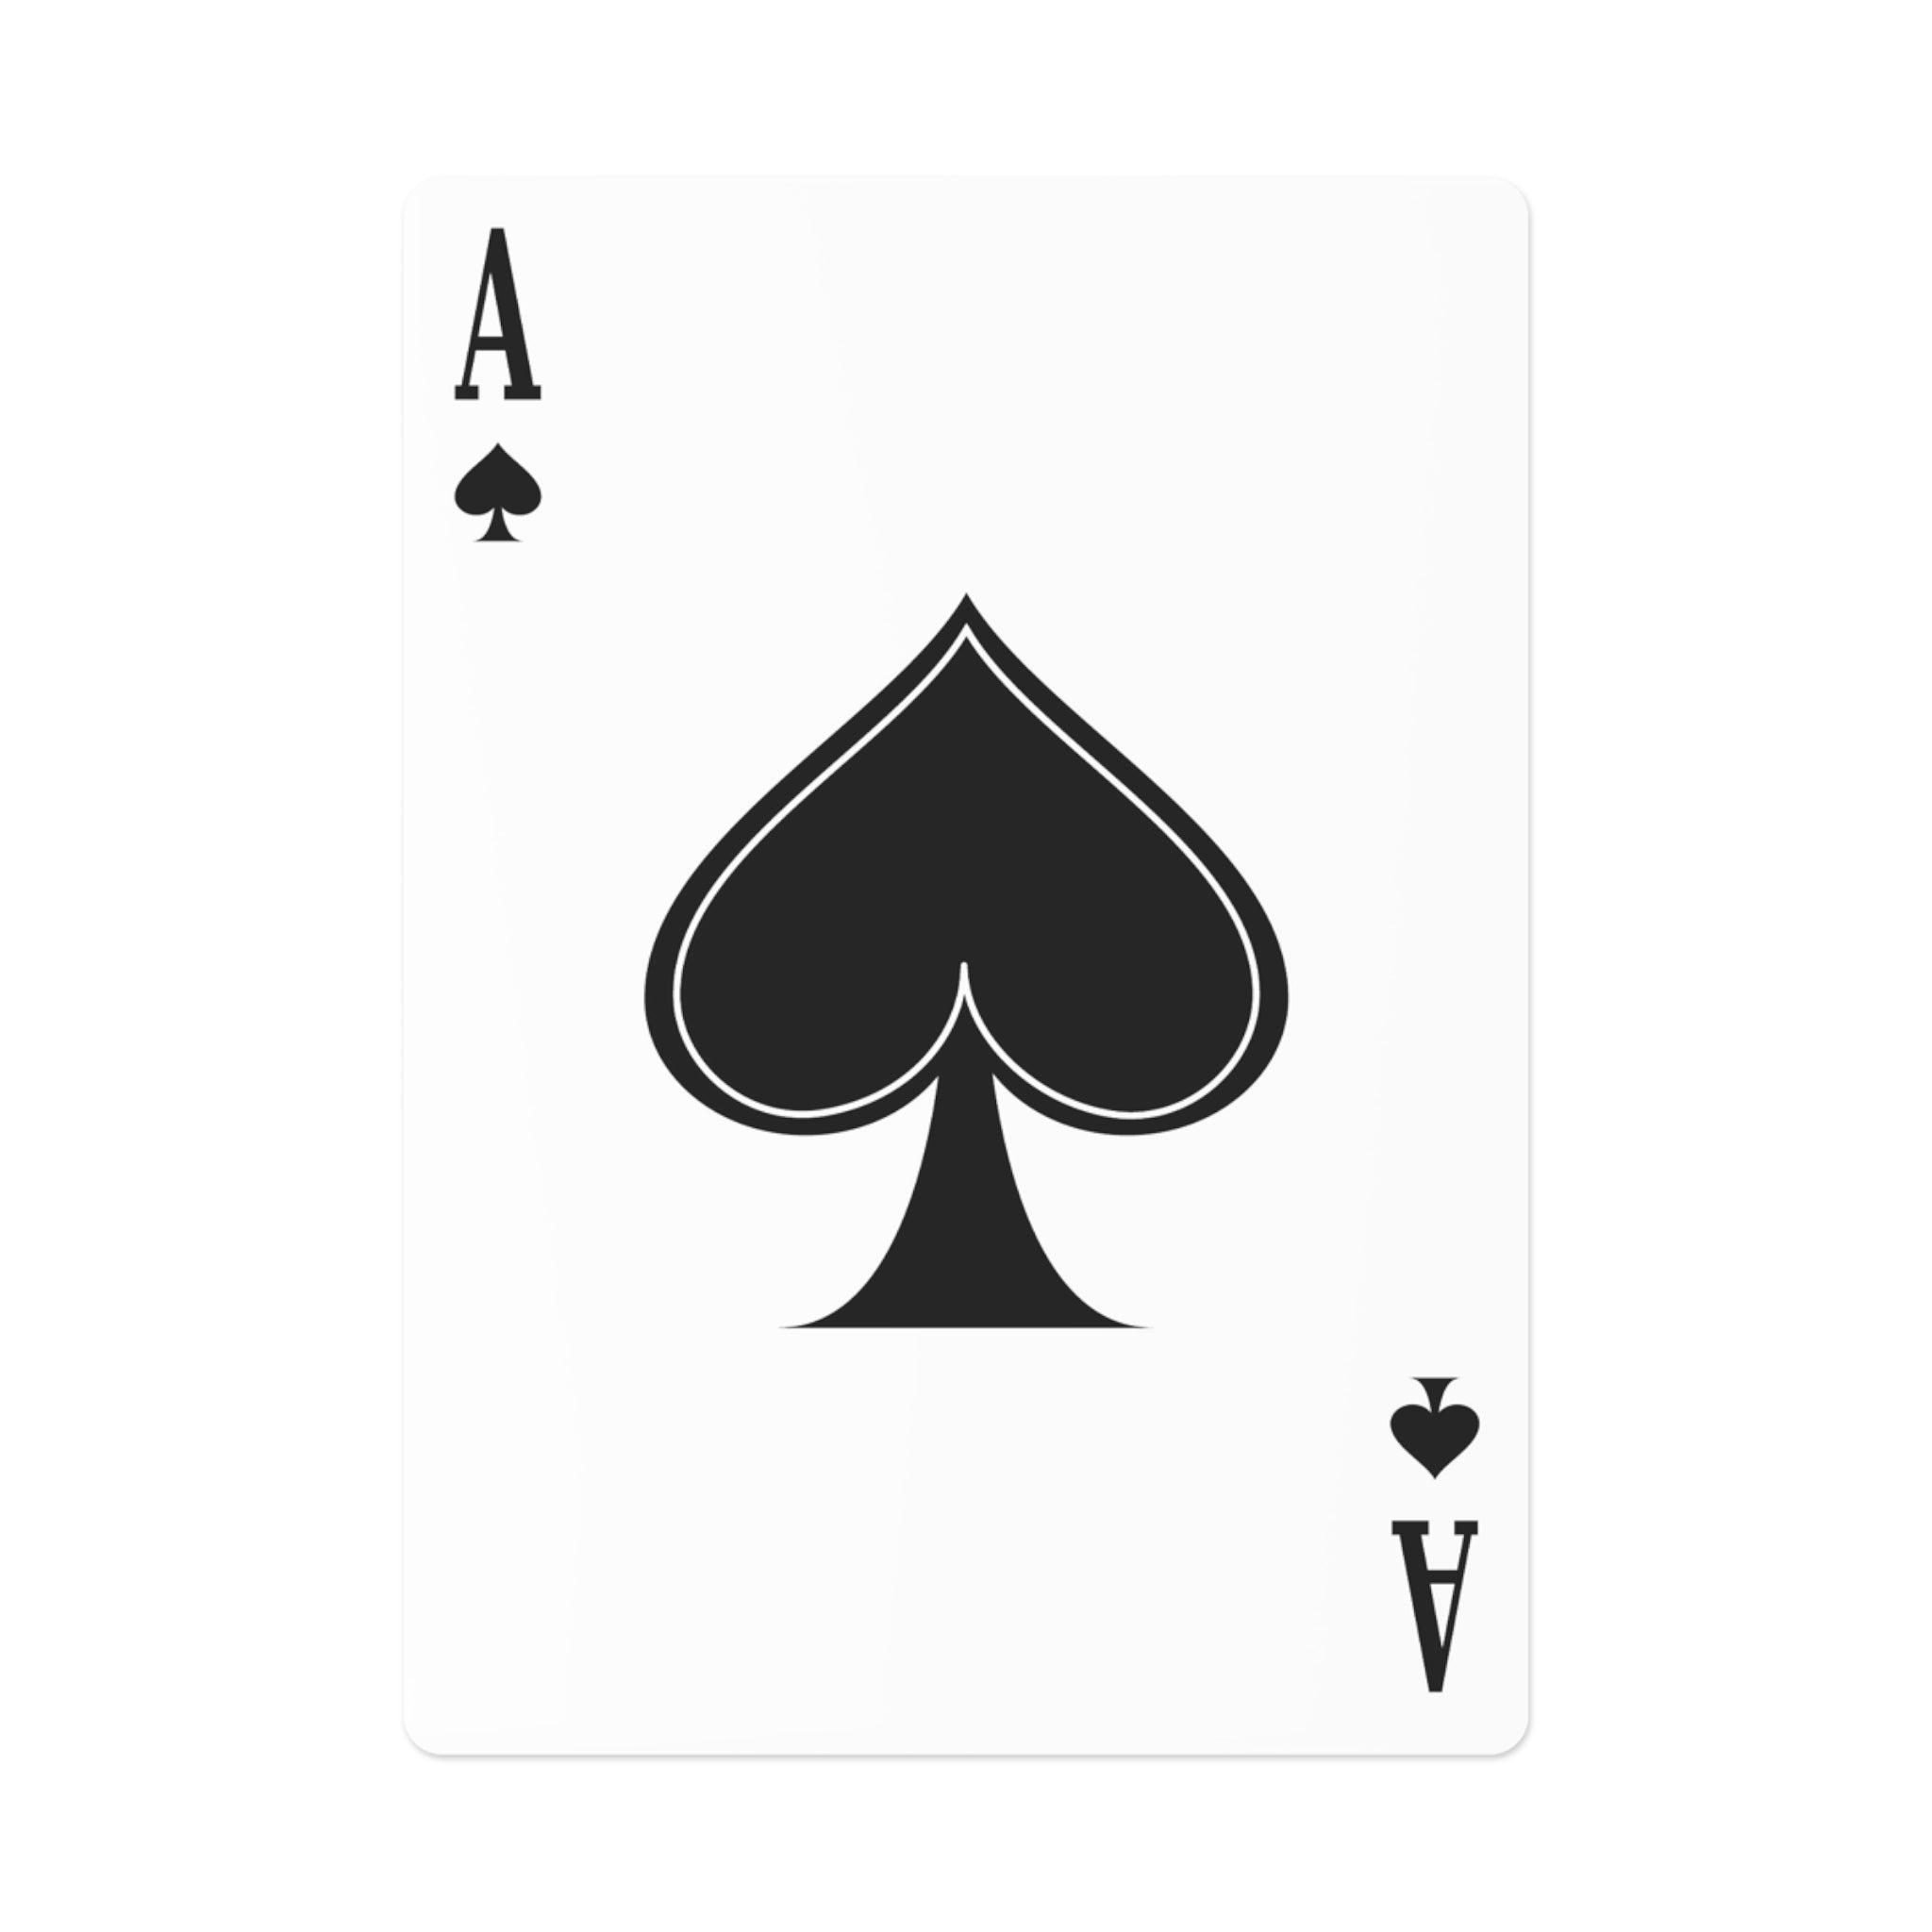 Skull Fire  - Poker Cards